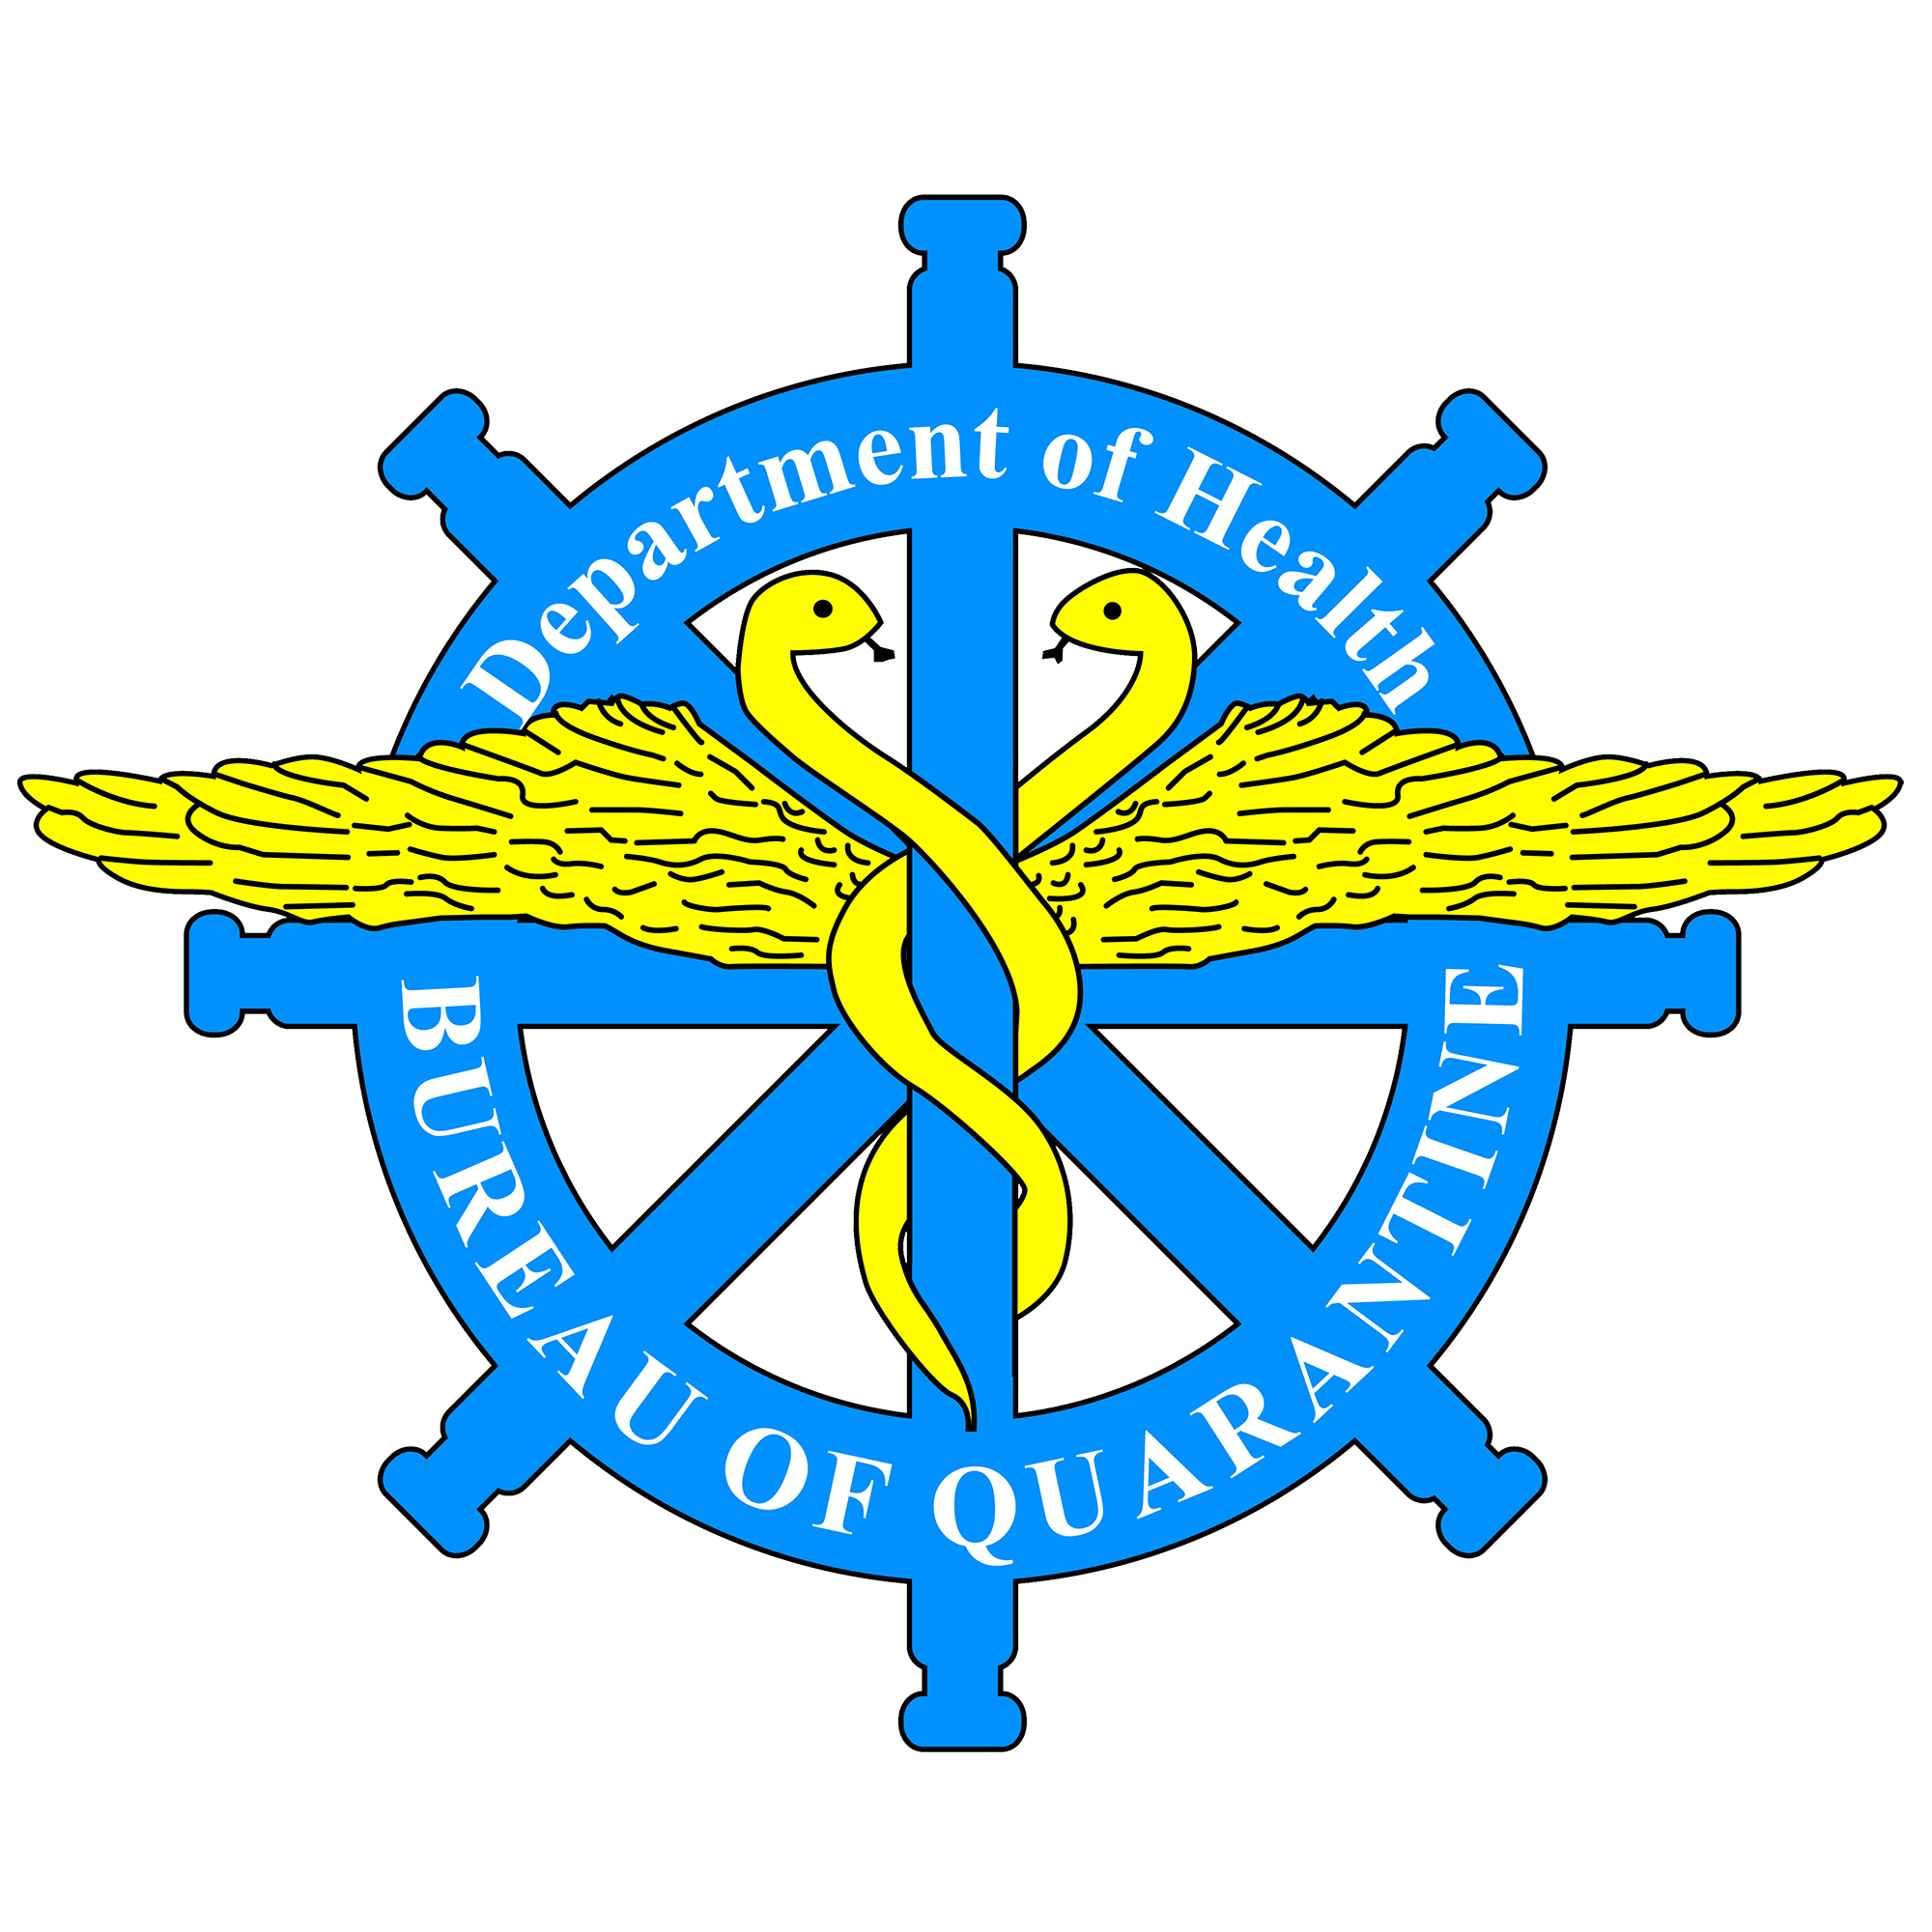 Quarantine Logo - BOQ logo without background edited. Bureau of Quarantine